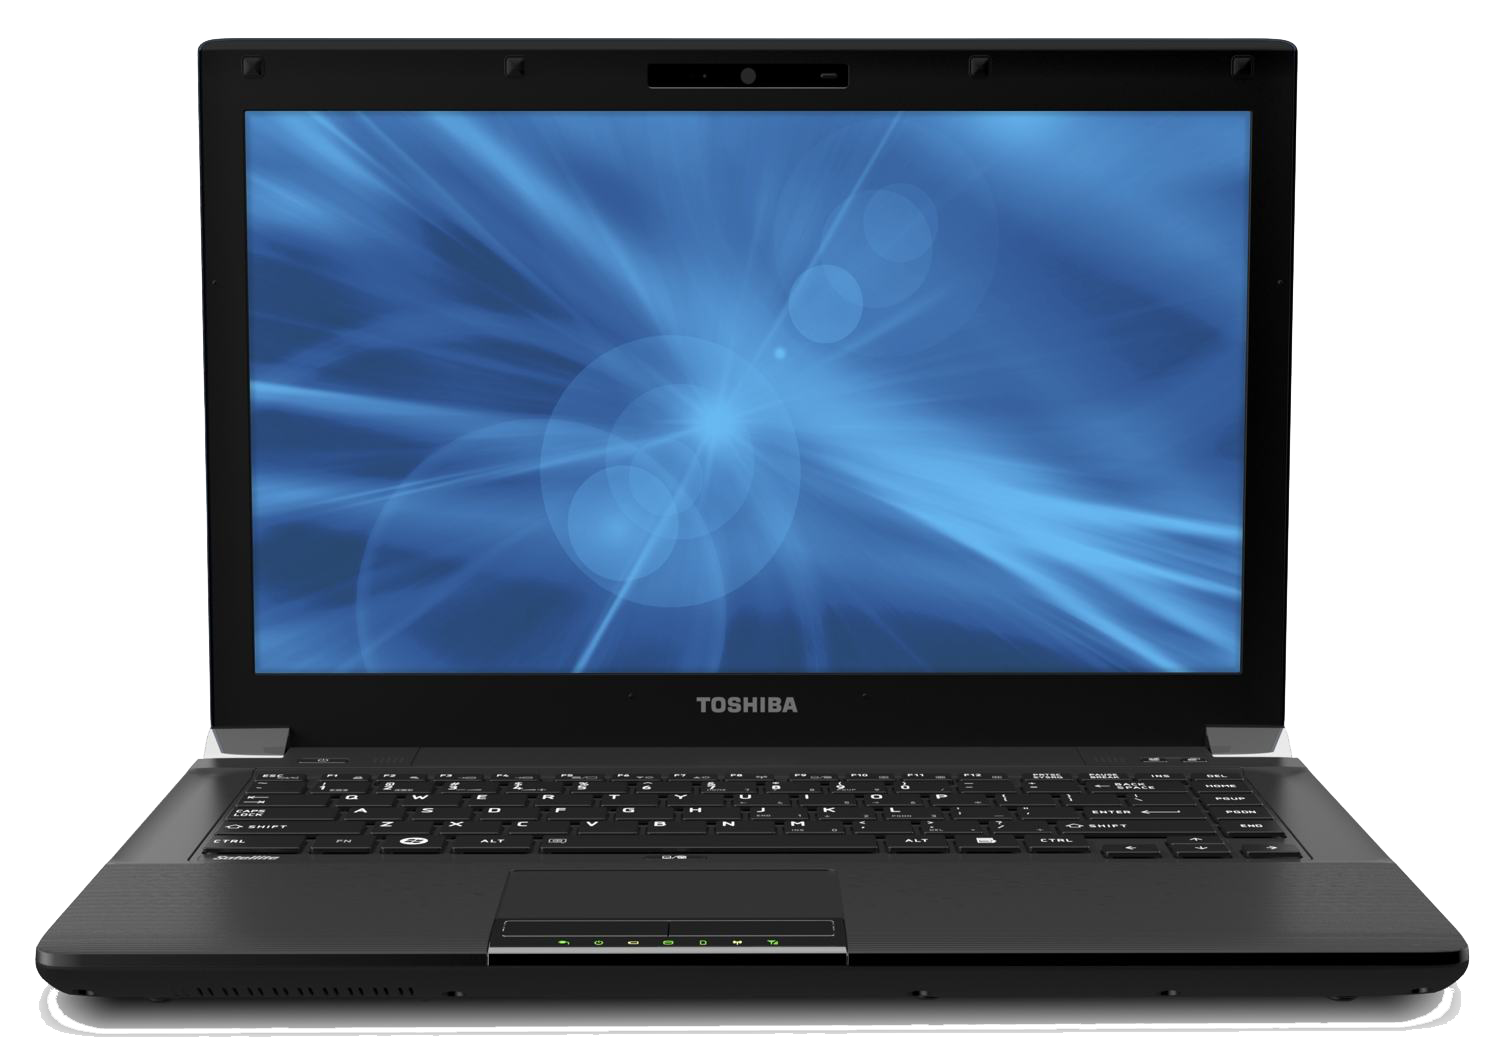 Toshiba Laptop Photos PNG Image